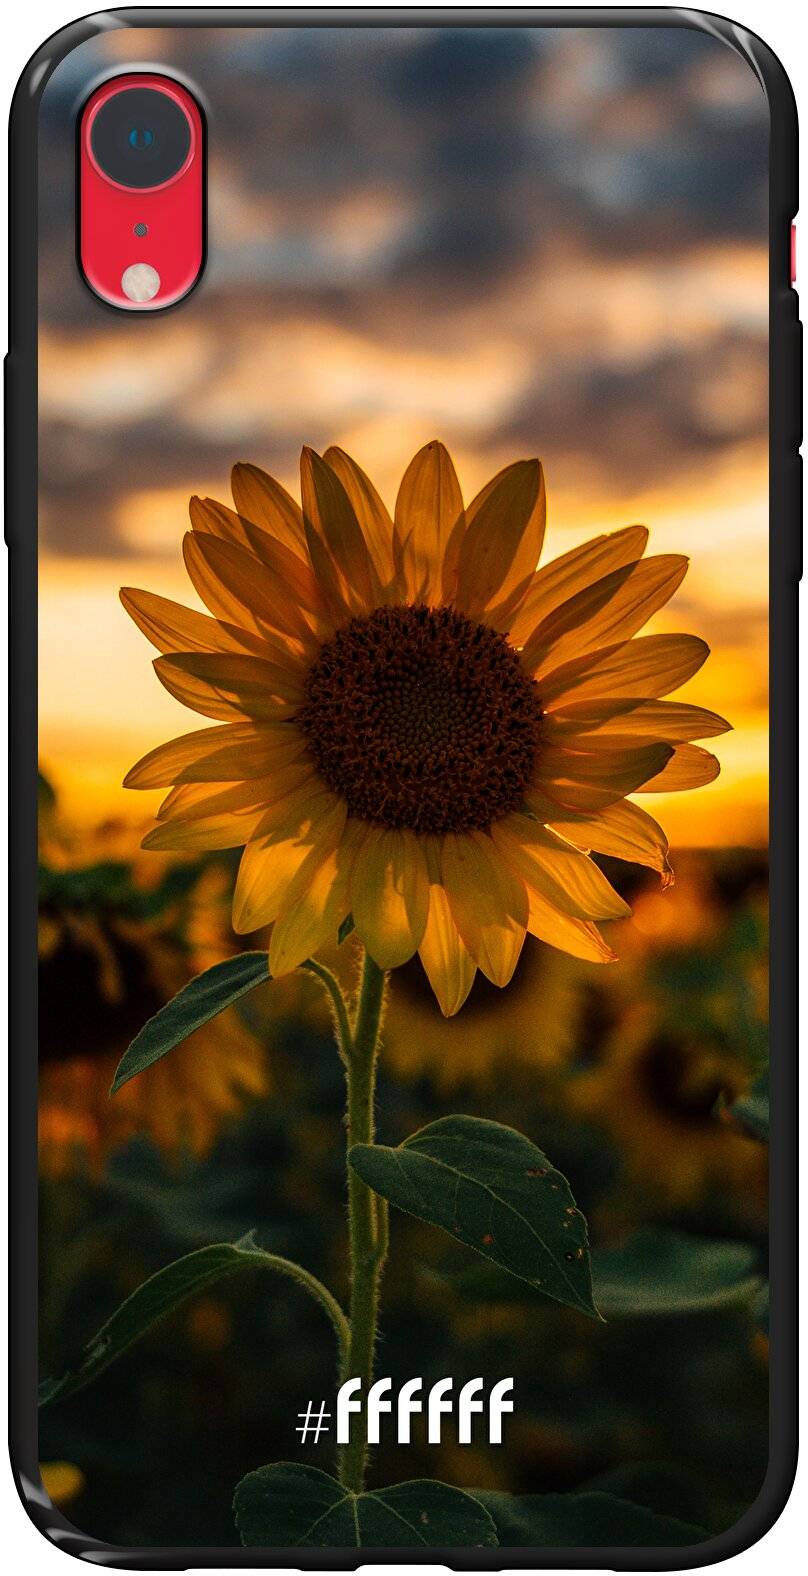 Sunset Sunflower iPhone Xr